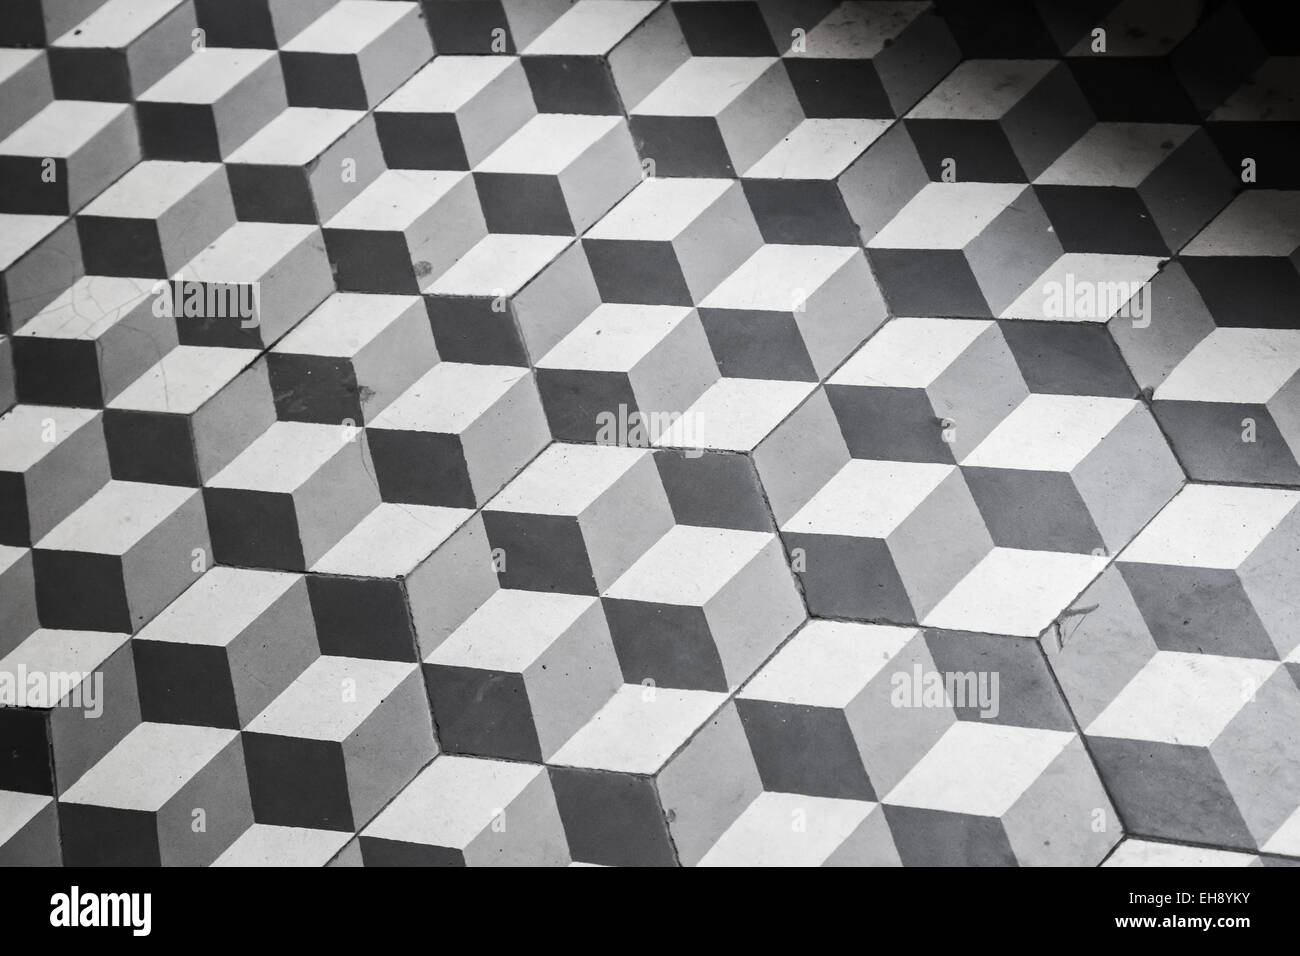 Vecchio nero e piastrelle bianche sul pavimento, modello di cubi, uno stile rétro Foto Stock